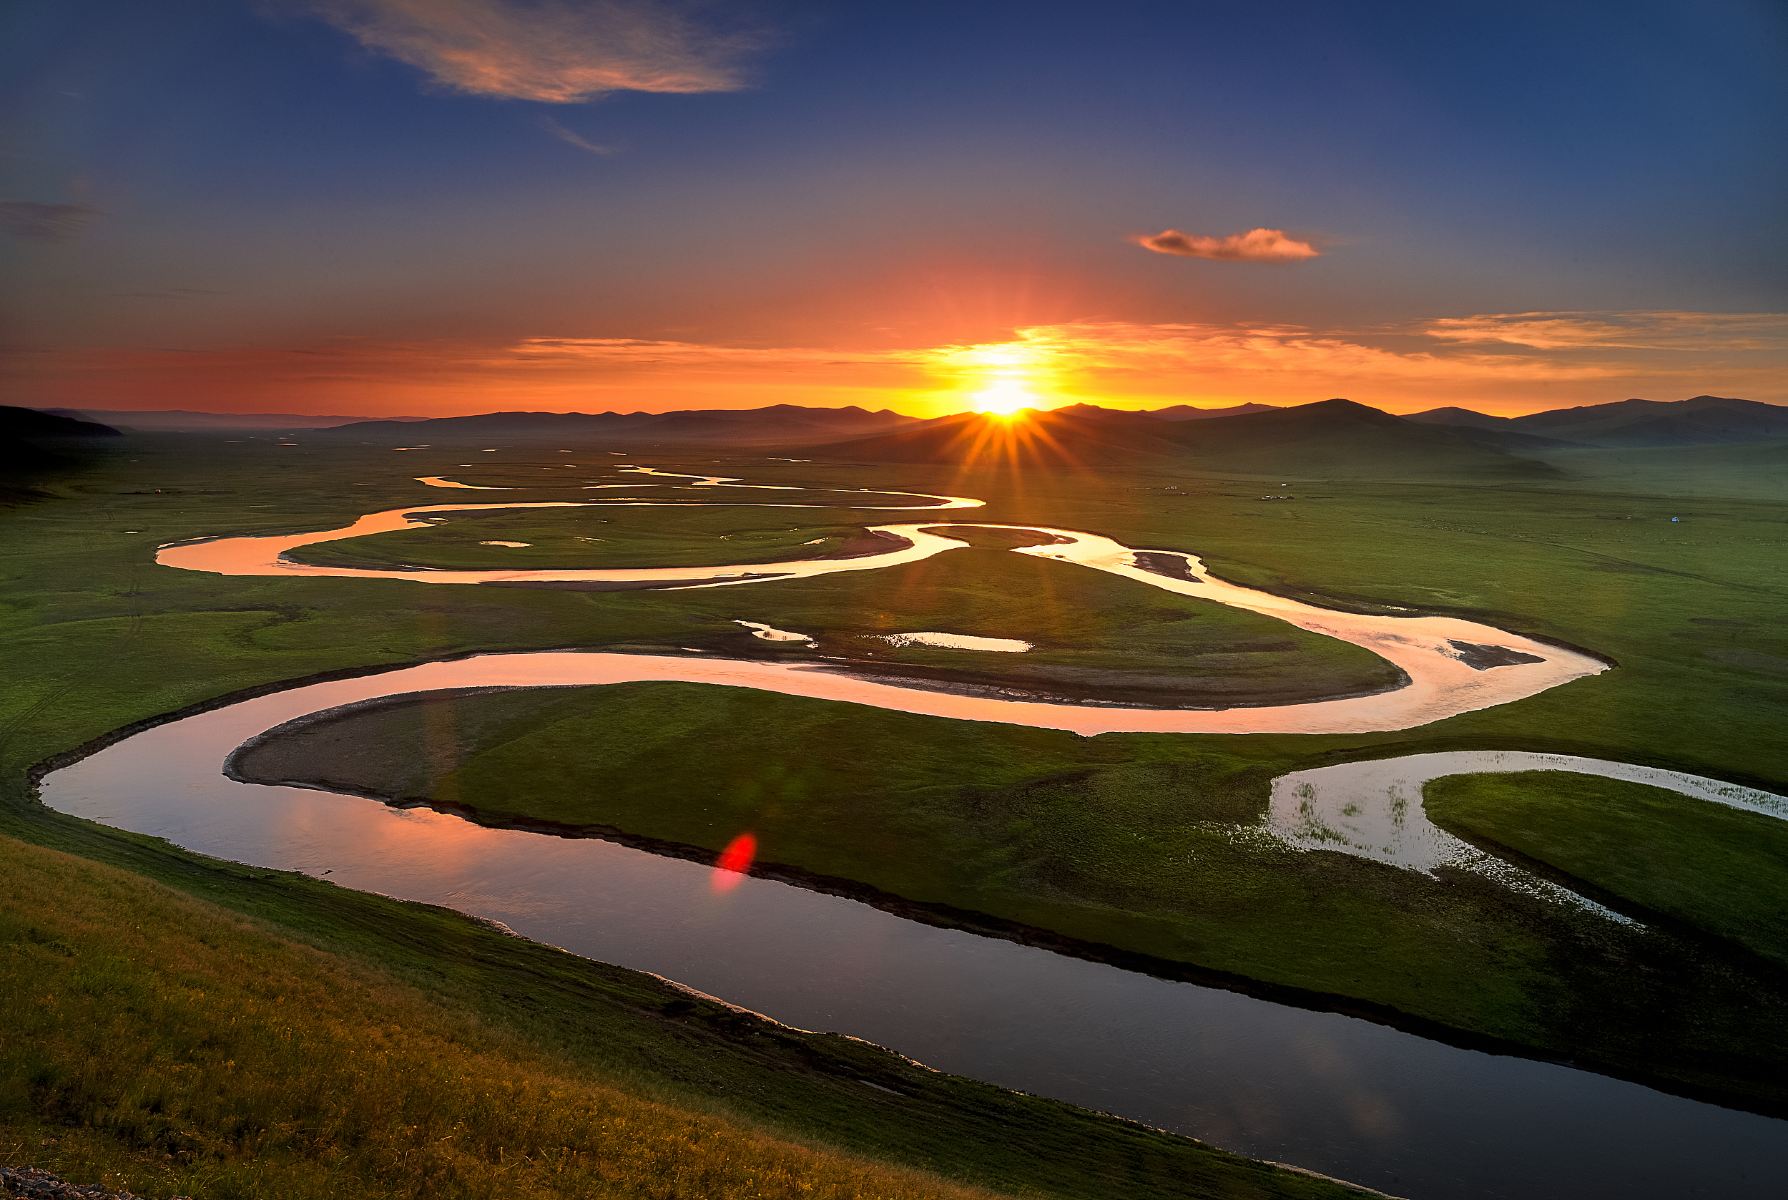 美丽的乌兰木伦河 - 摄友摄色 - 华声论坛